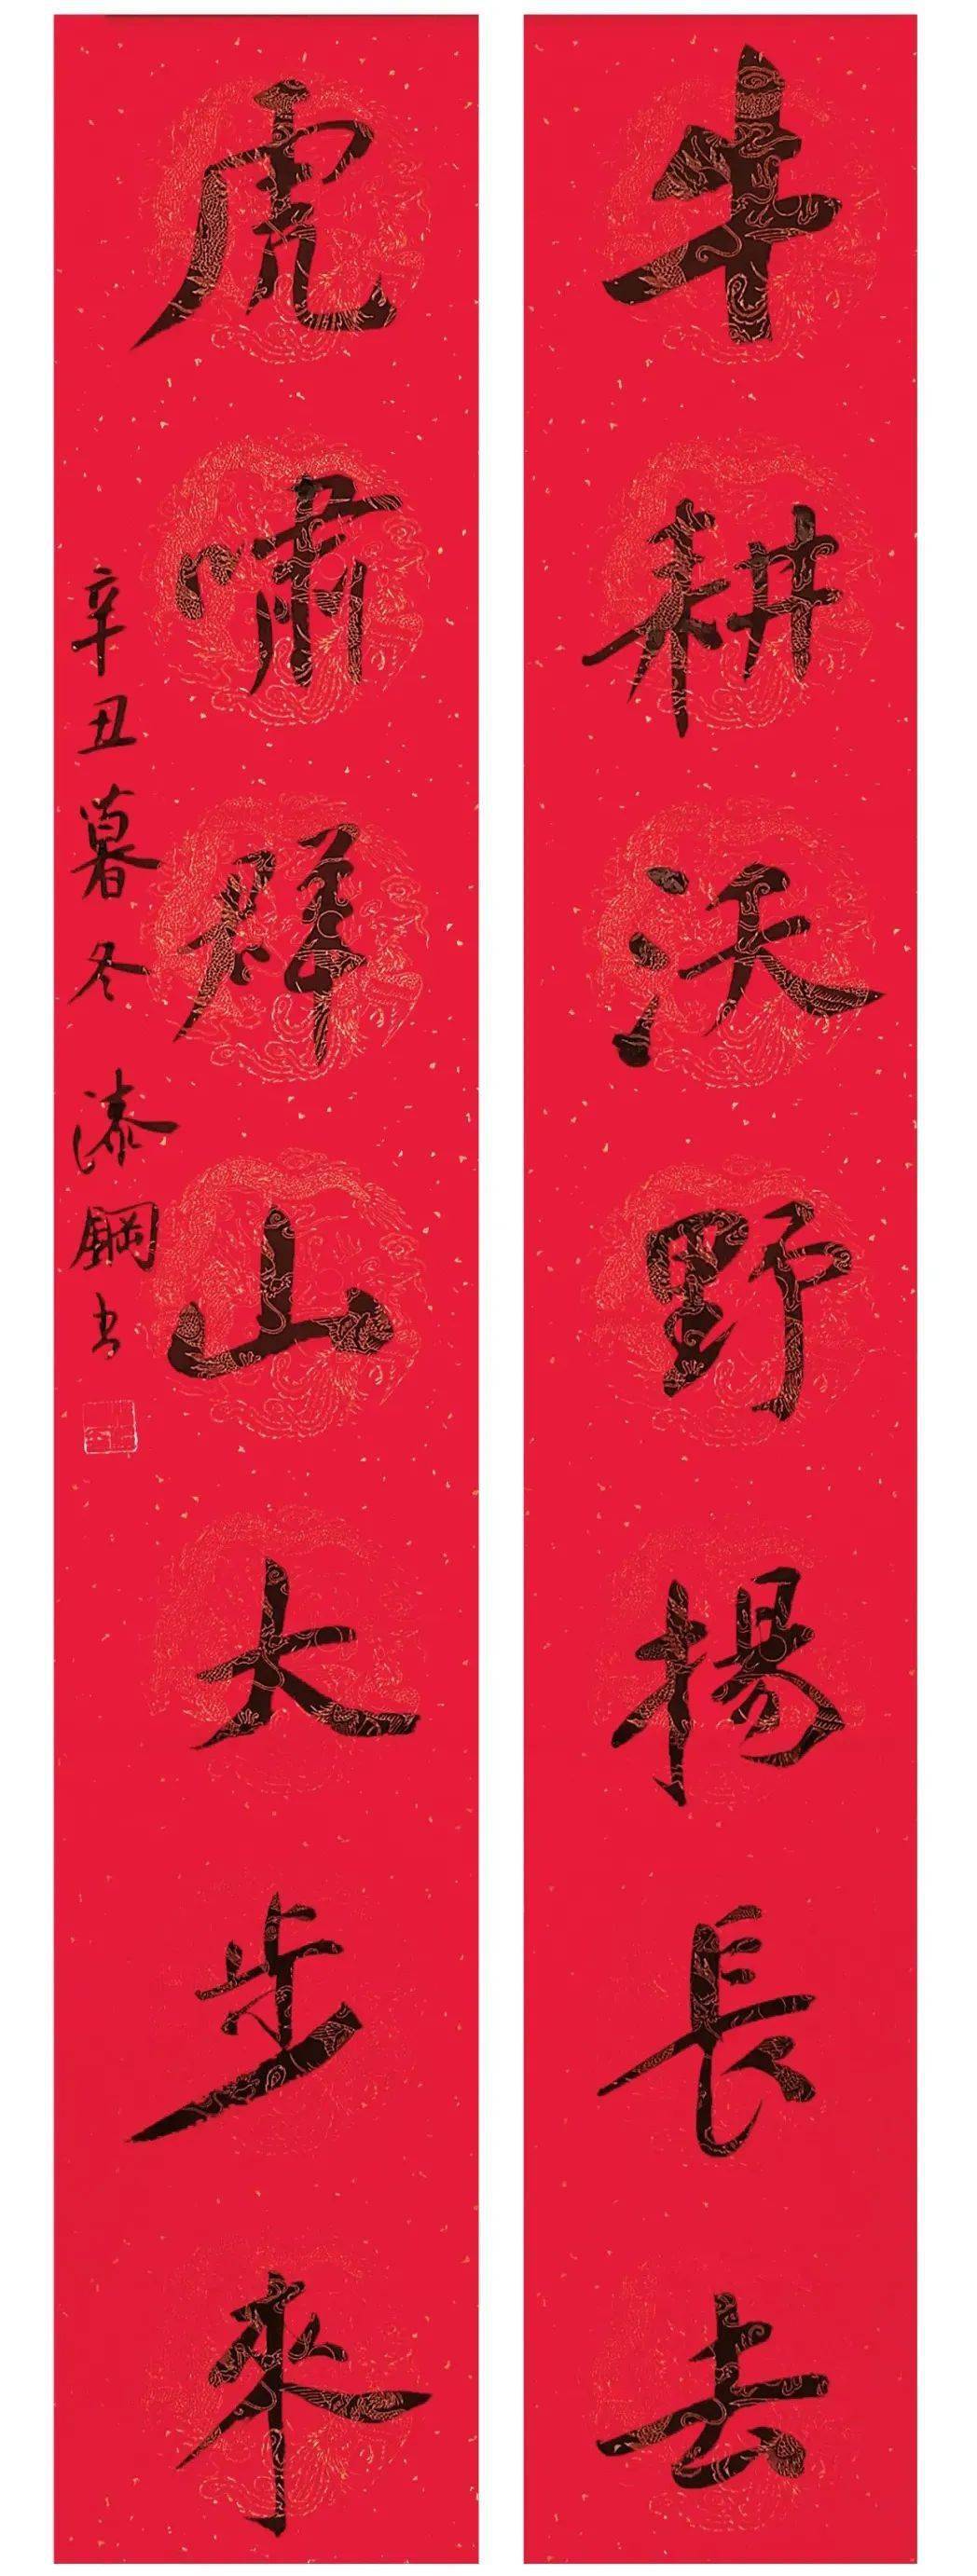 伝統的工芸品熊野筆 手島右卿先生生誕百年記念 烏牛-